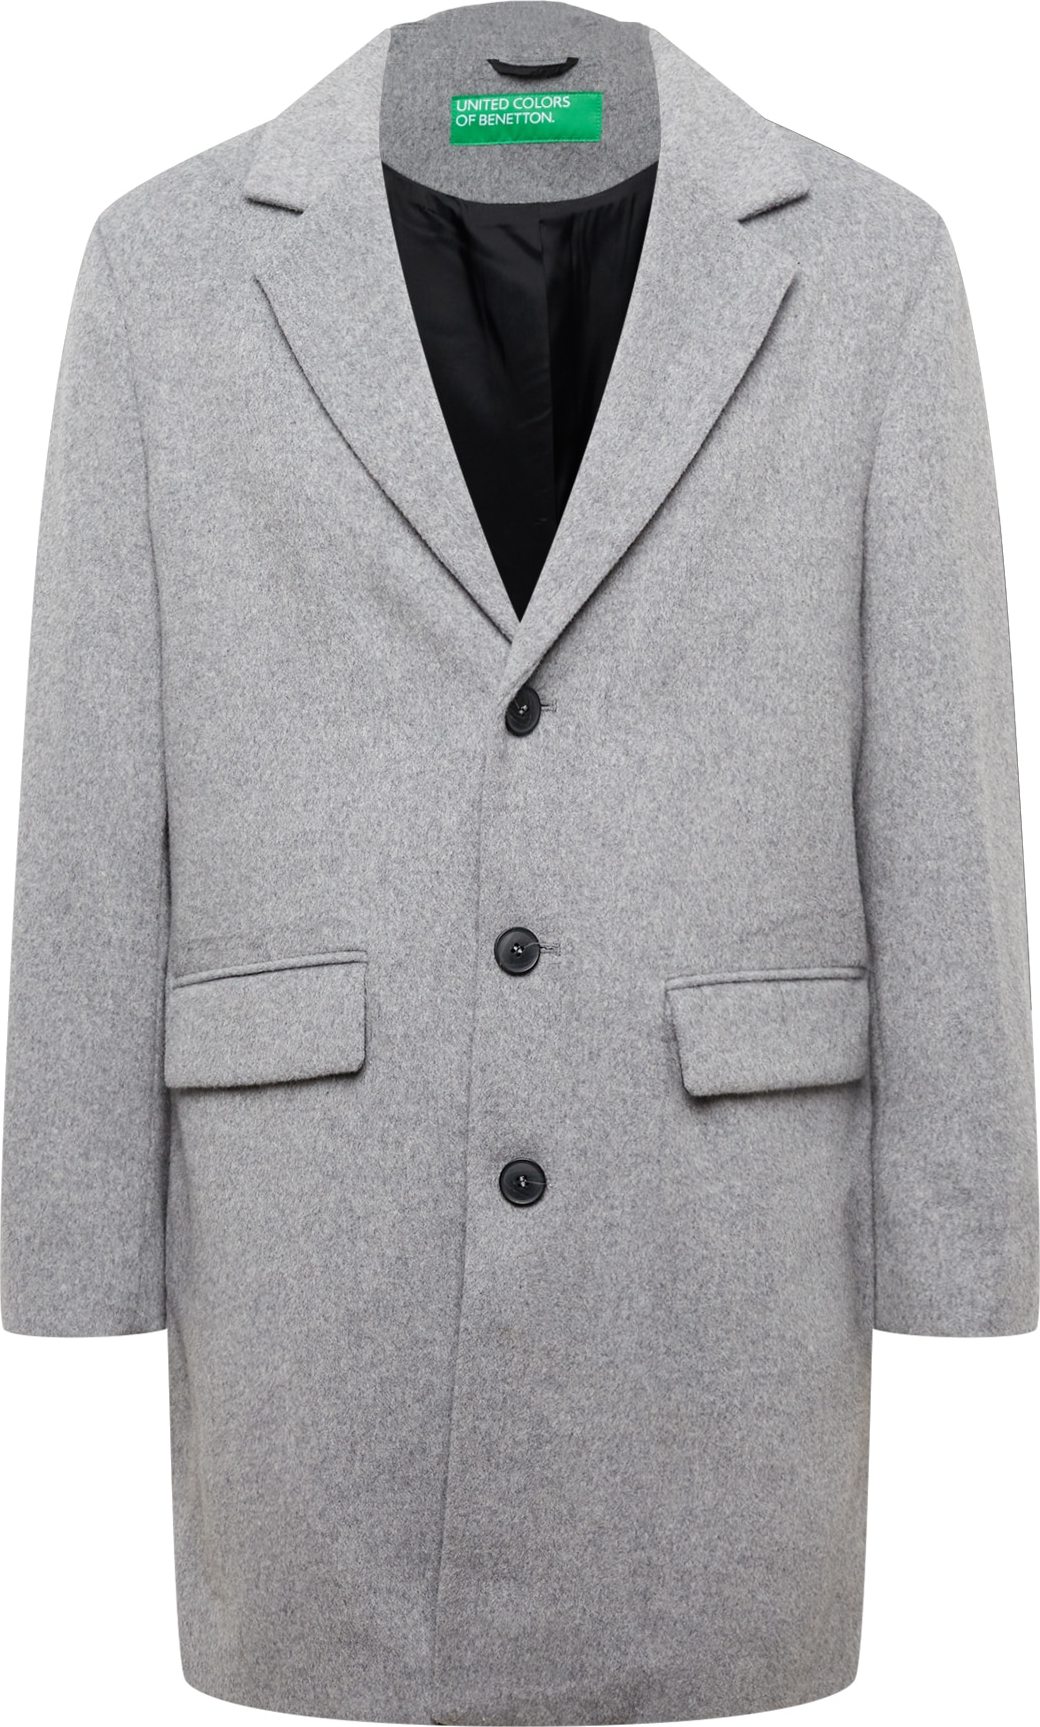 UNITED COLORS OF BENETTON Přechodný kabát šedý melír